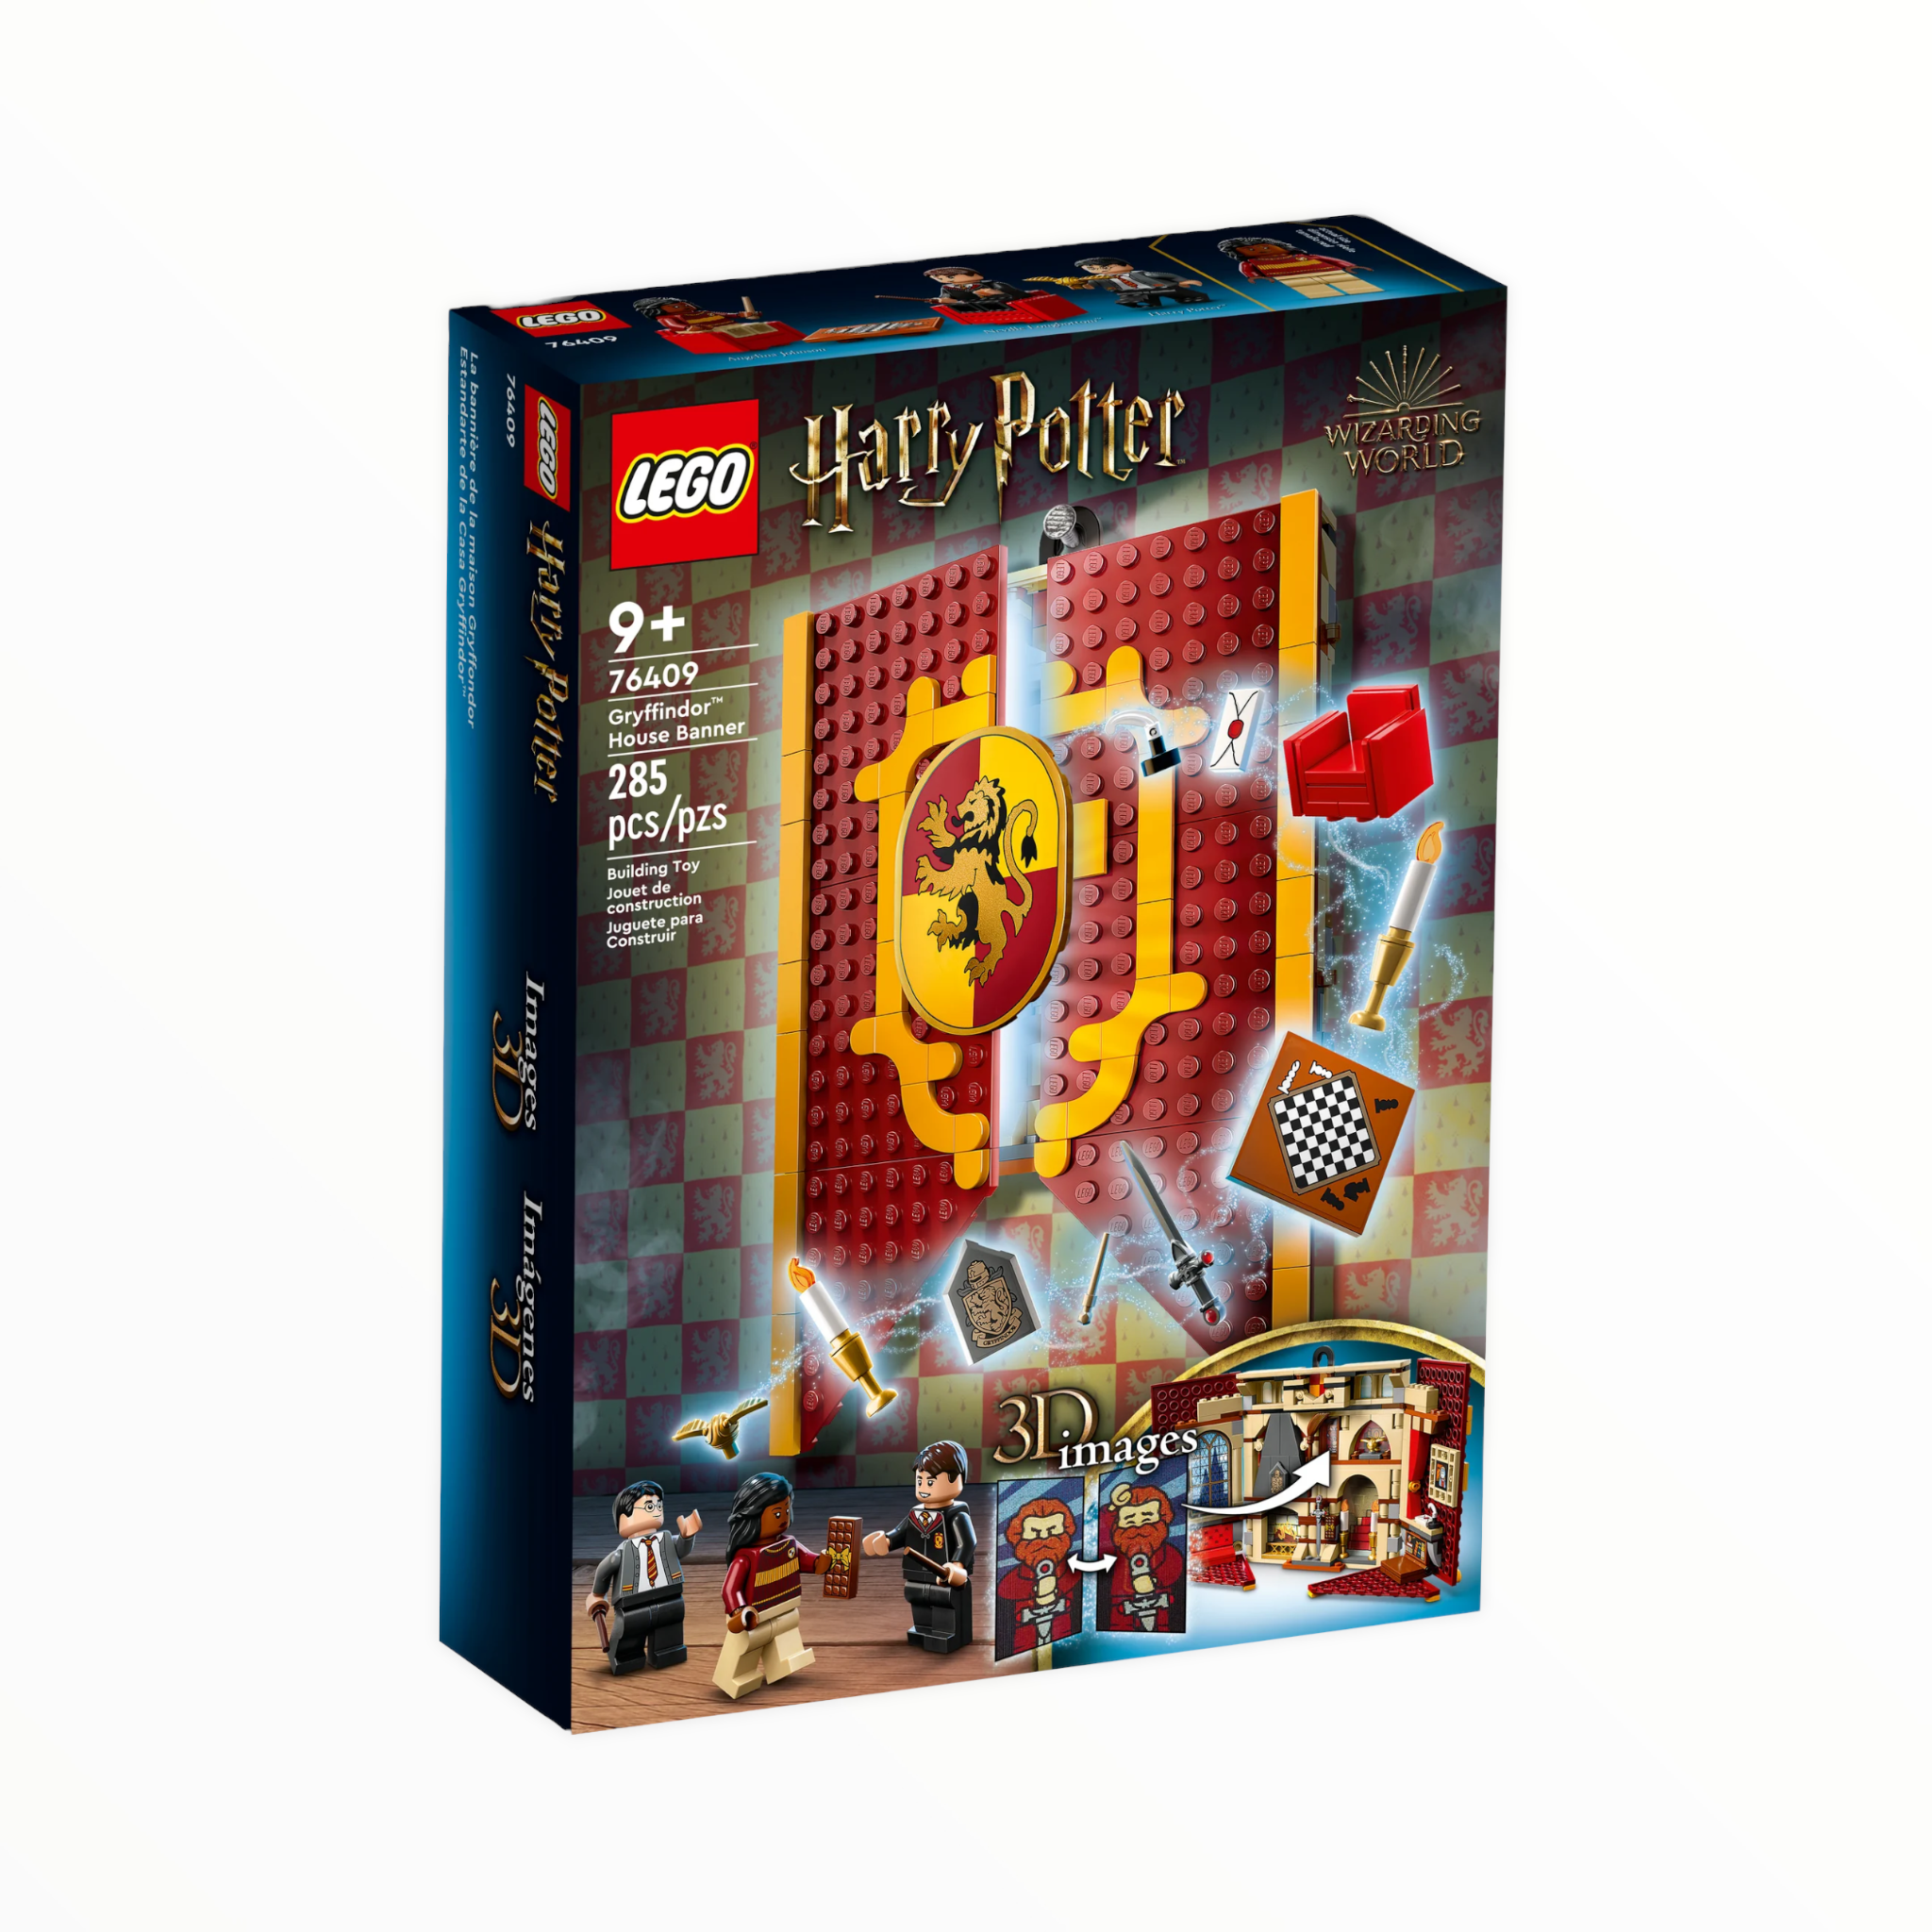 76409 Harry Potter Gryffindor House Banner